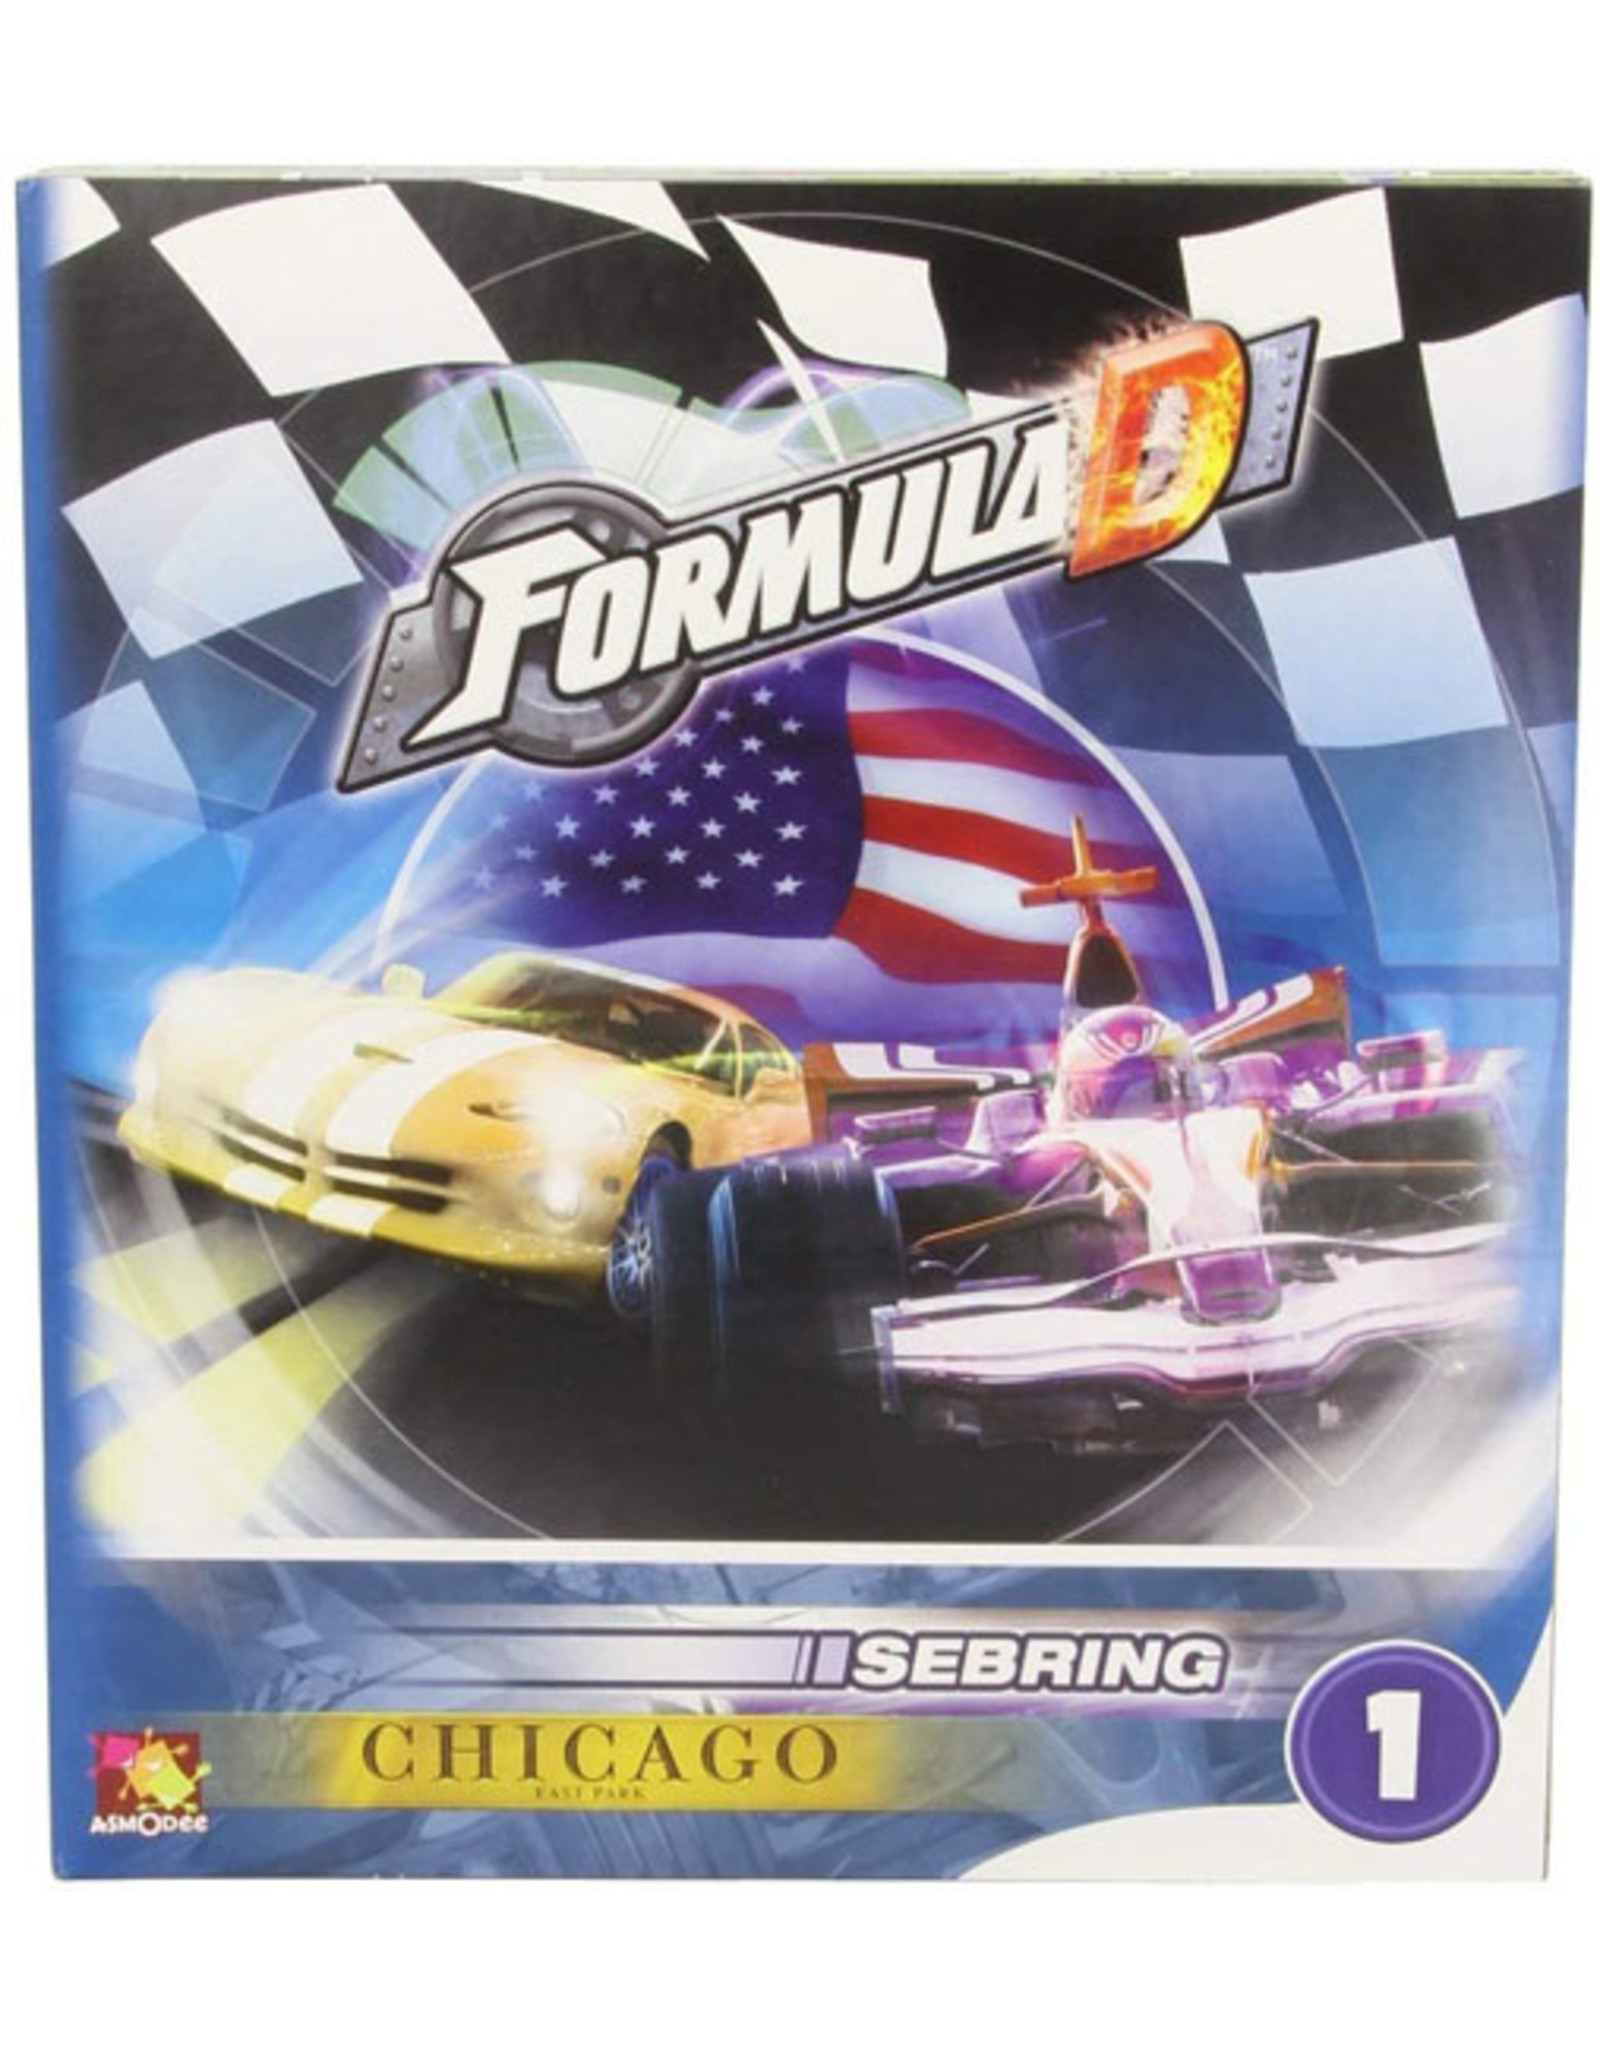 Formula D Chicago